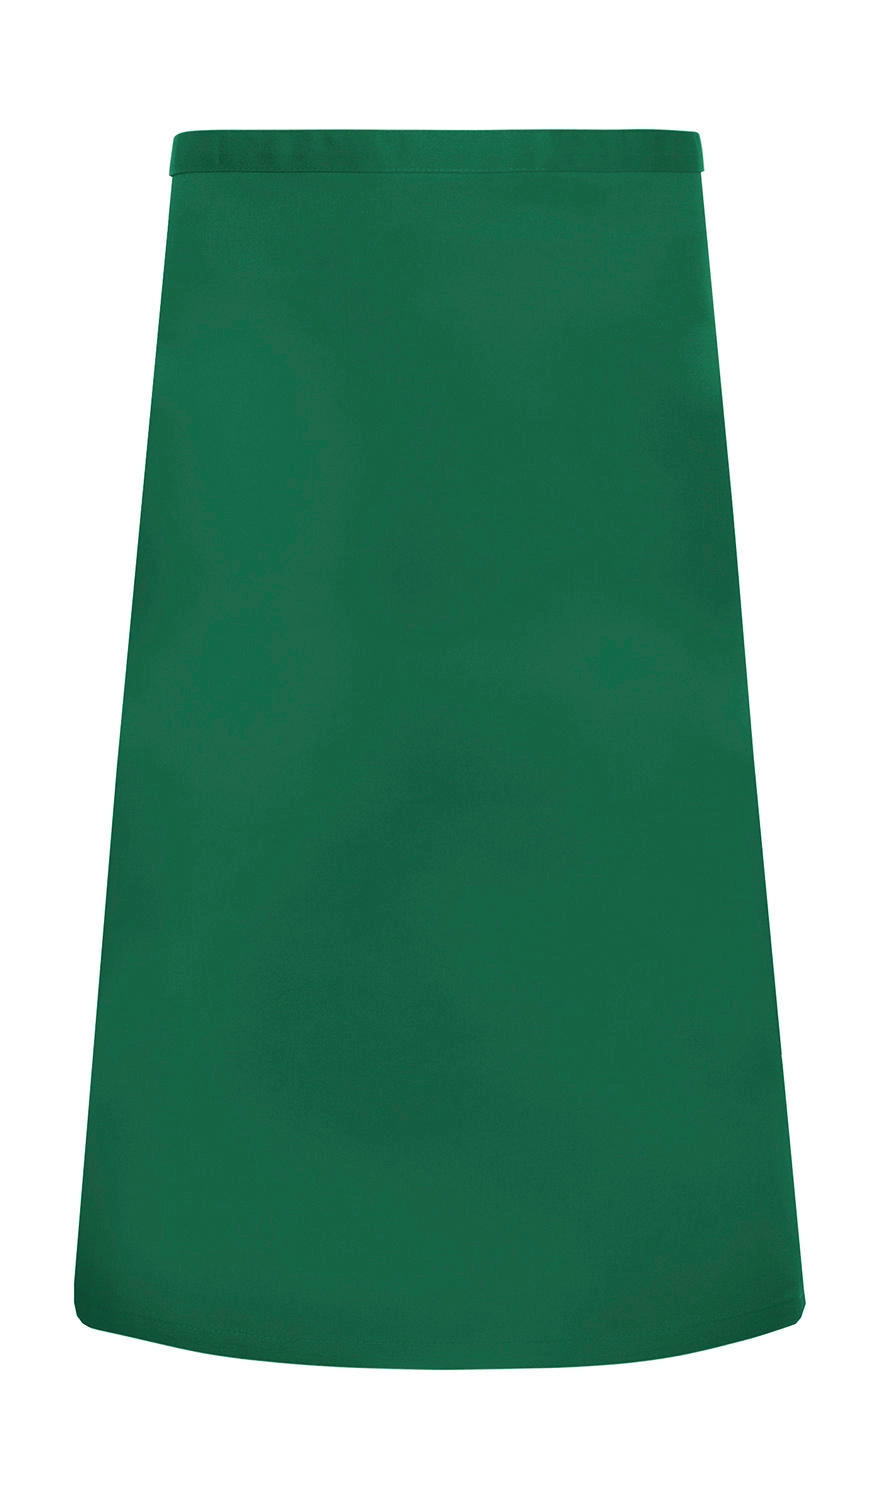 Basic Bistro Apron zum Besticken und Bedrucken in der Farbe Forest Green mit Ihren Logo, Schriftzug oder Motiv.